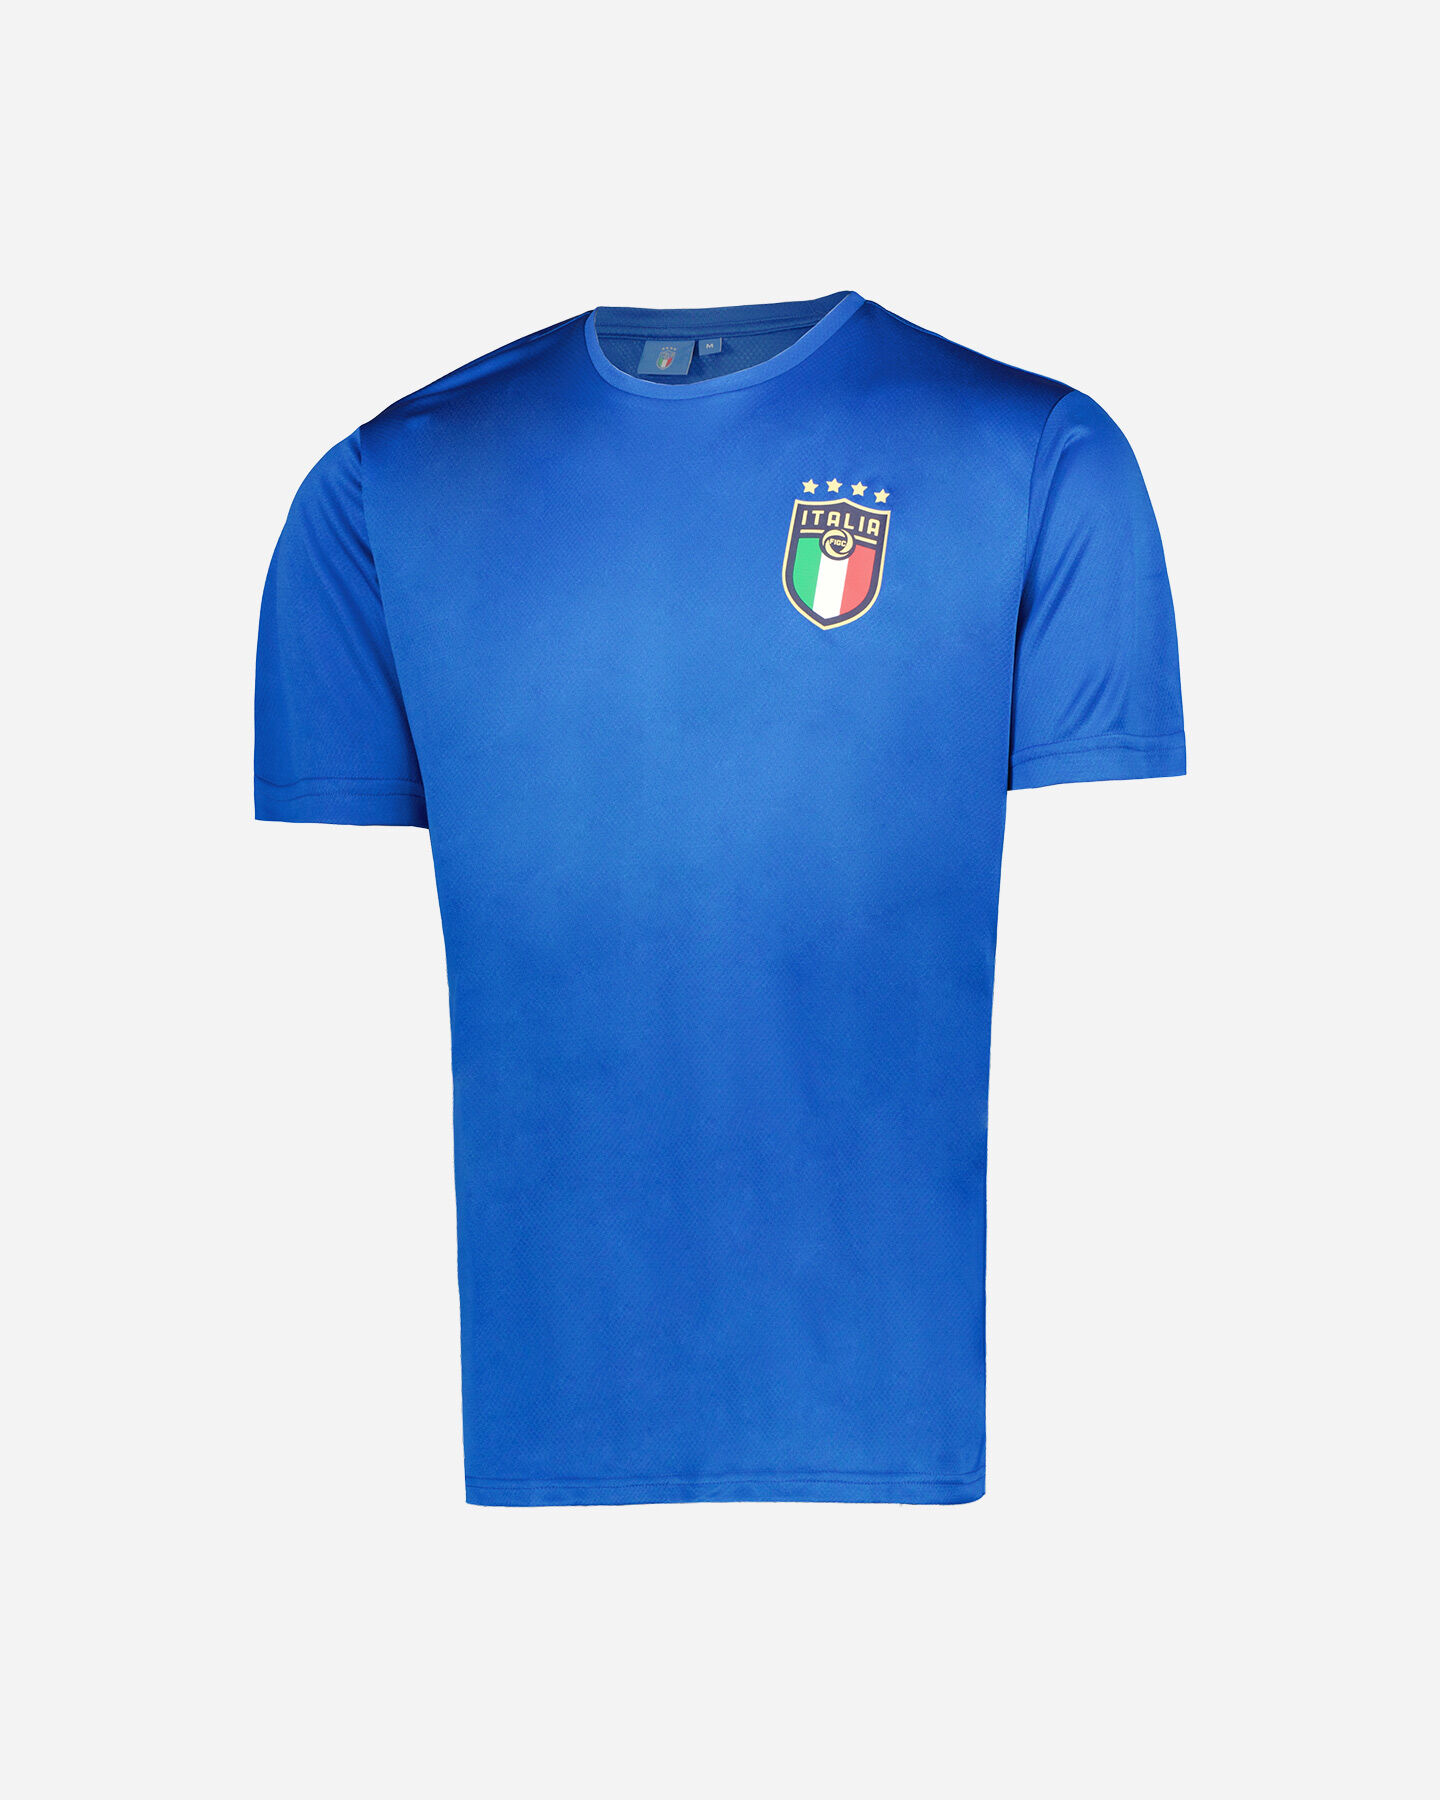  Abbigliamento calcio PUMA FIGC ITALIA PES TEAM POWER M S5430797|01|S scatto 0